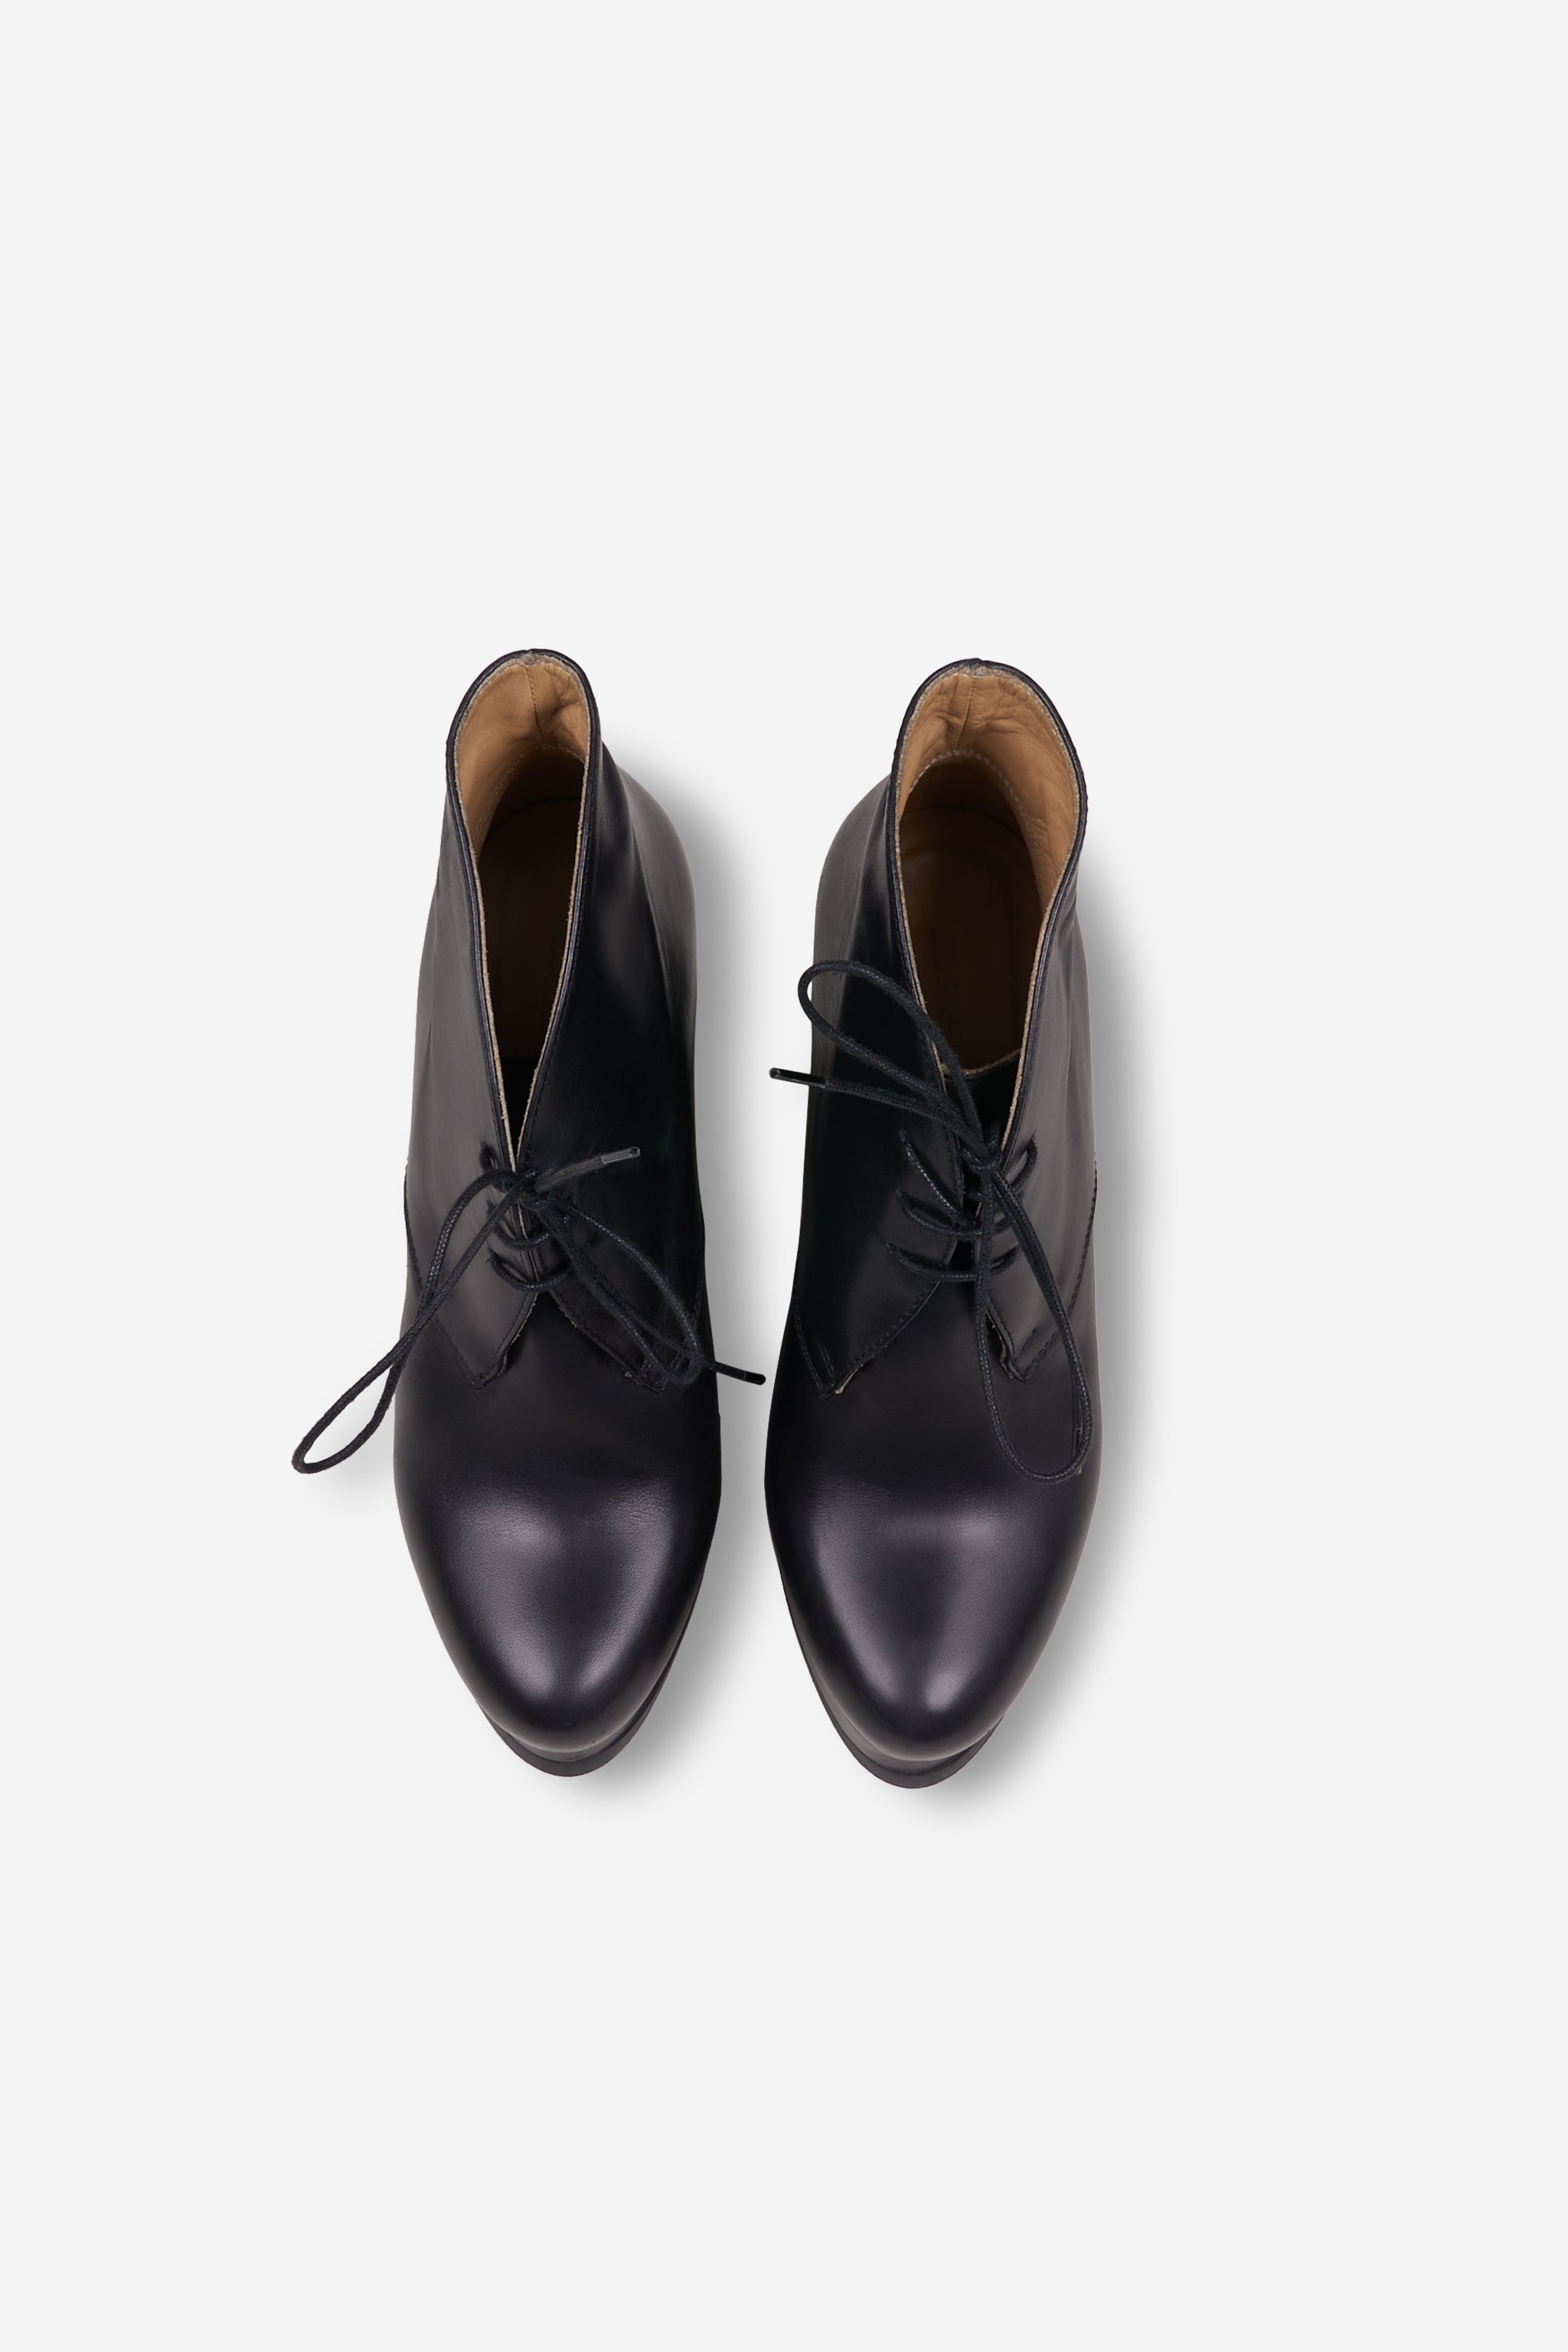 Black wedge heel shoes